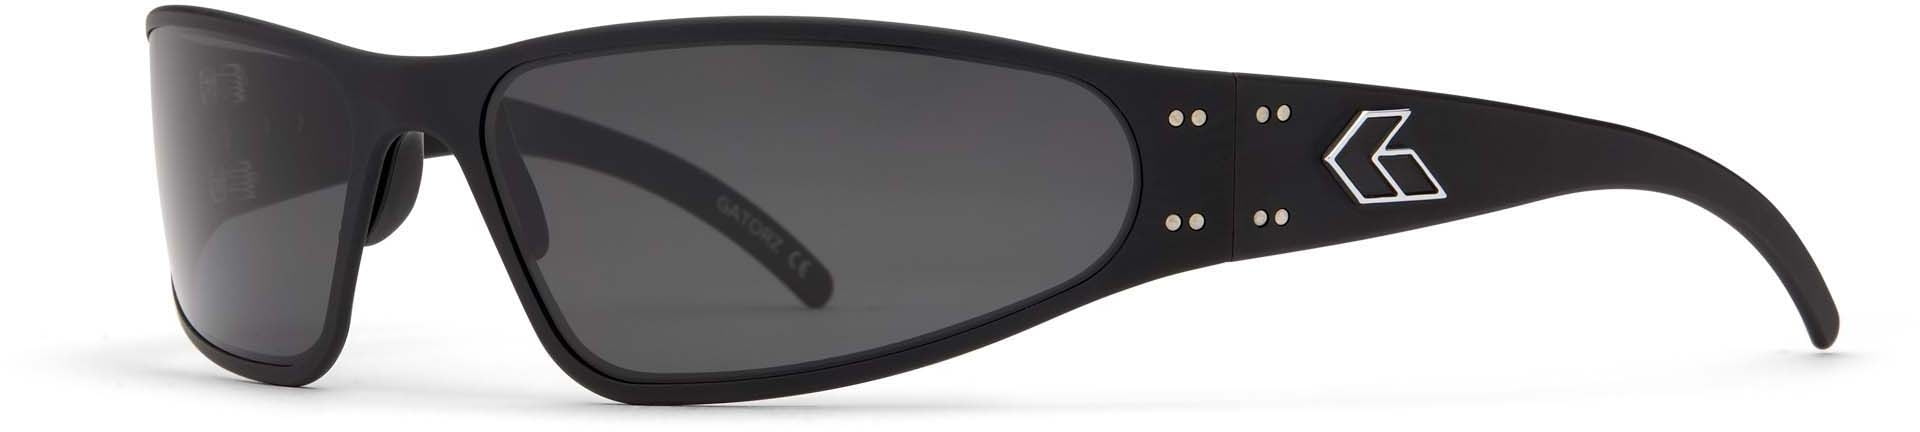 Gatorz Wraptor Sunglasses Black Frame Grey Lens WRABLK01